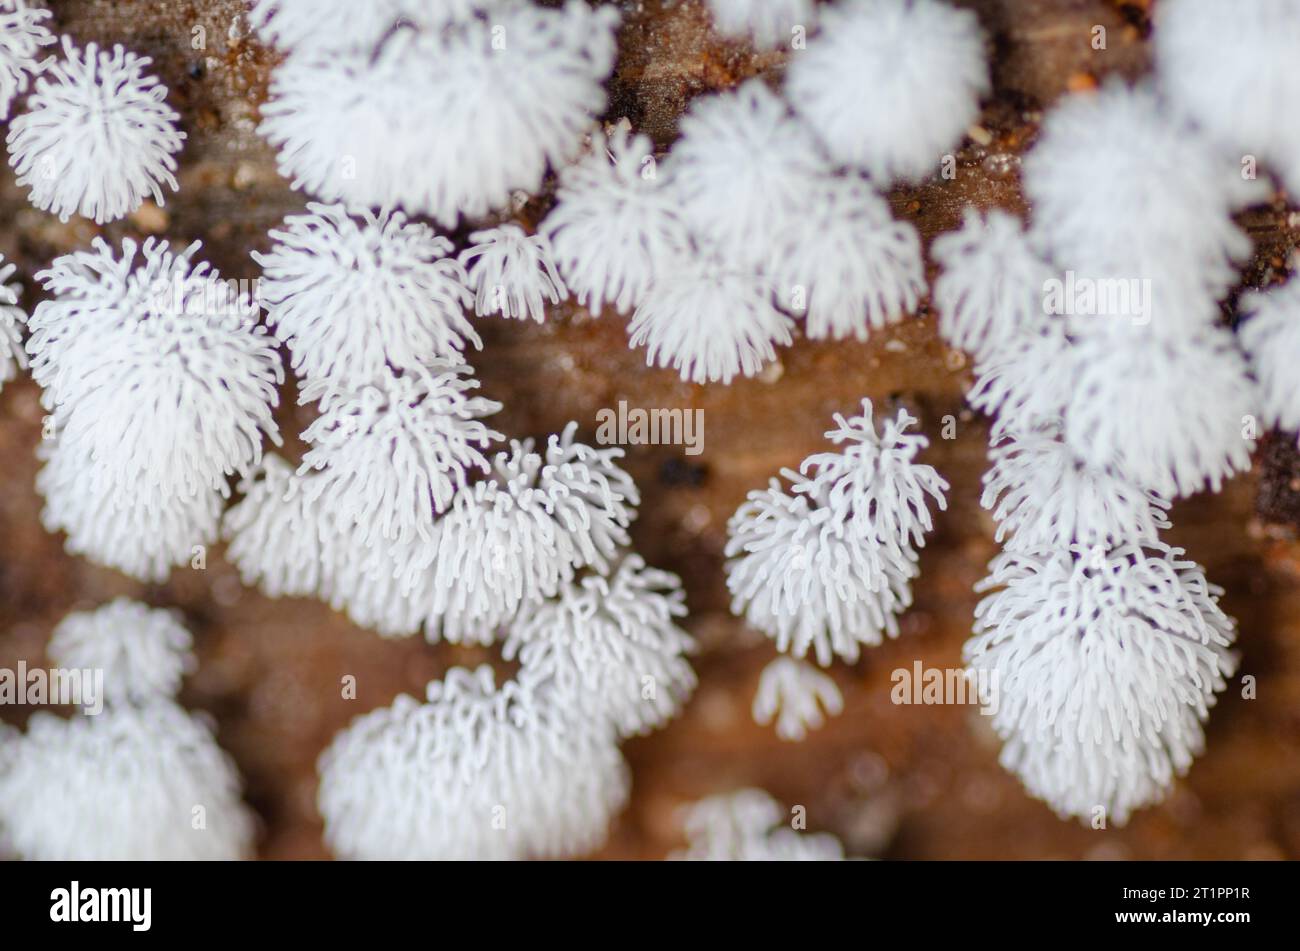 Primo piano delle dita ricoperte di spore della muffa corallina a nido d'ape, Ceratiomyxa fruticulosa, che cresce su un albero caduto in una foresta del Texas orientale. Foto Stock